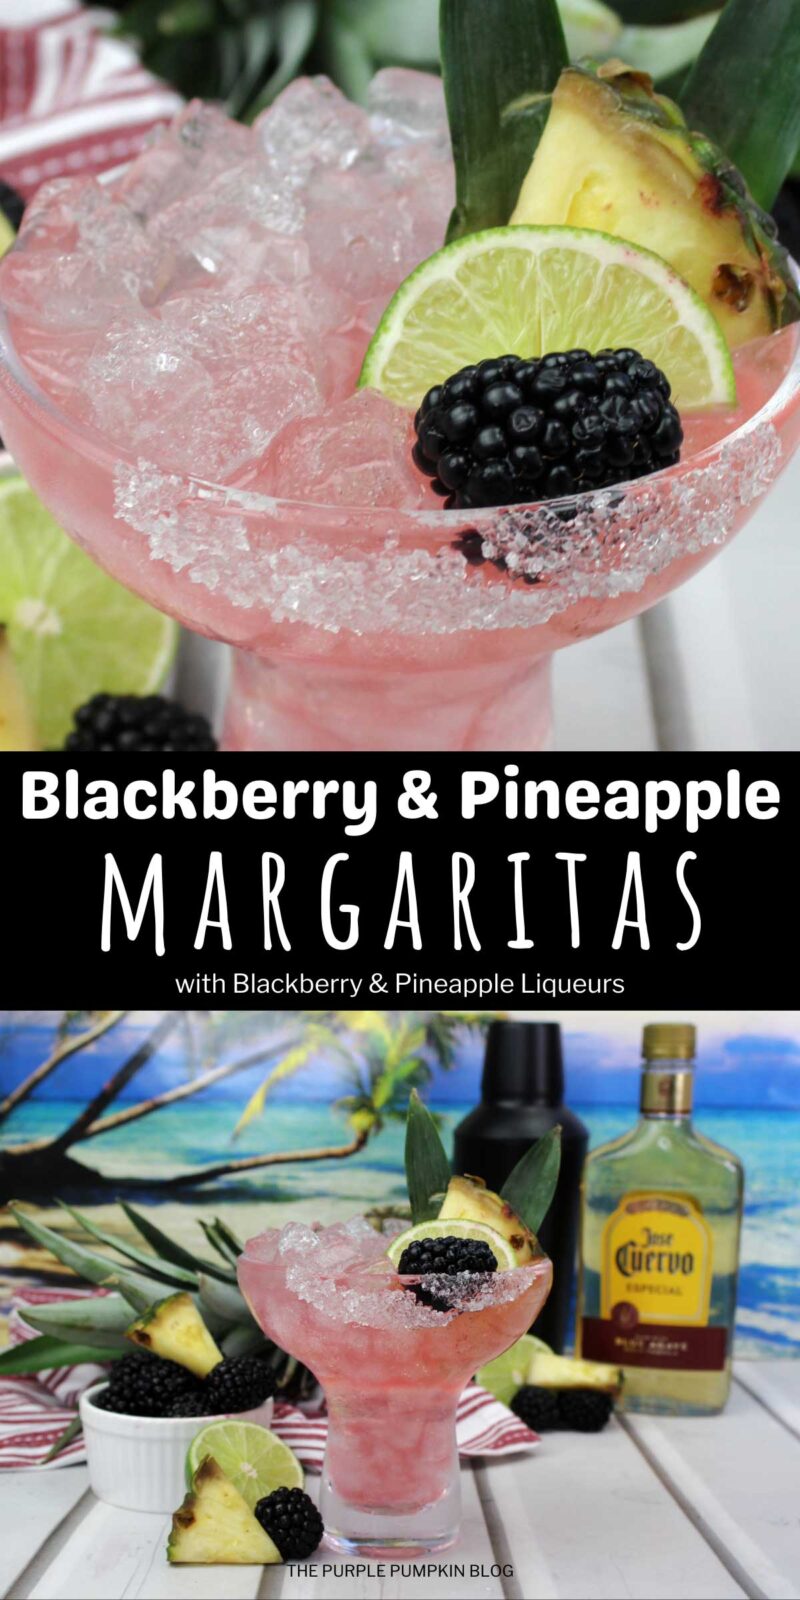 Blackberry & Pineapple Margaritas